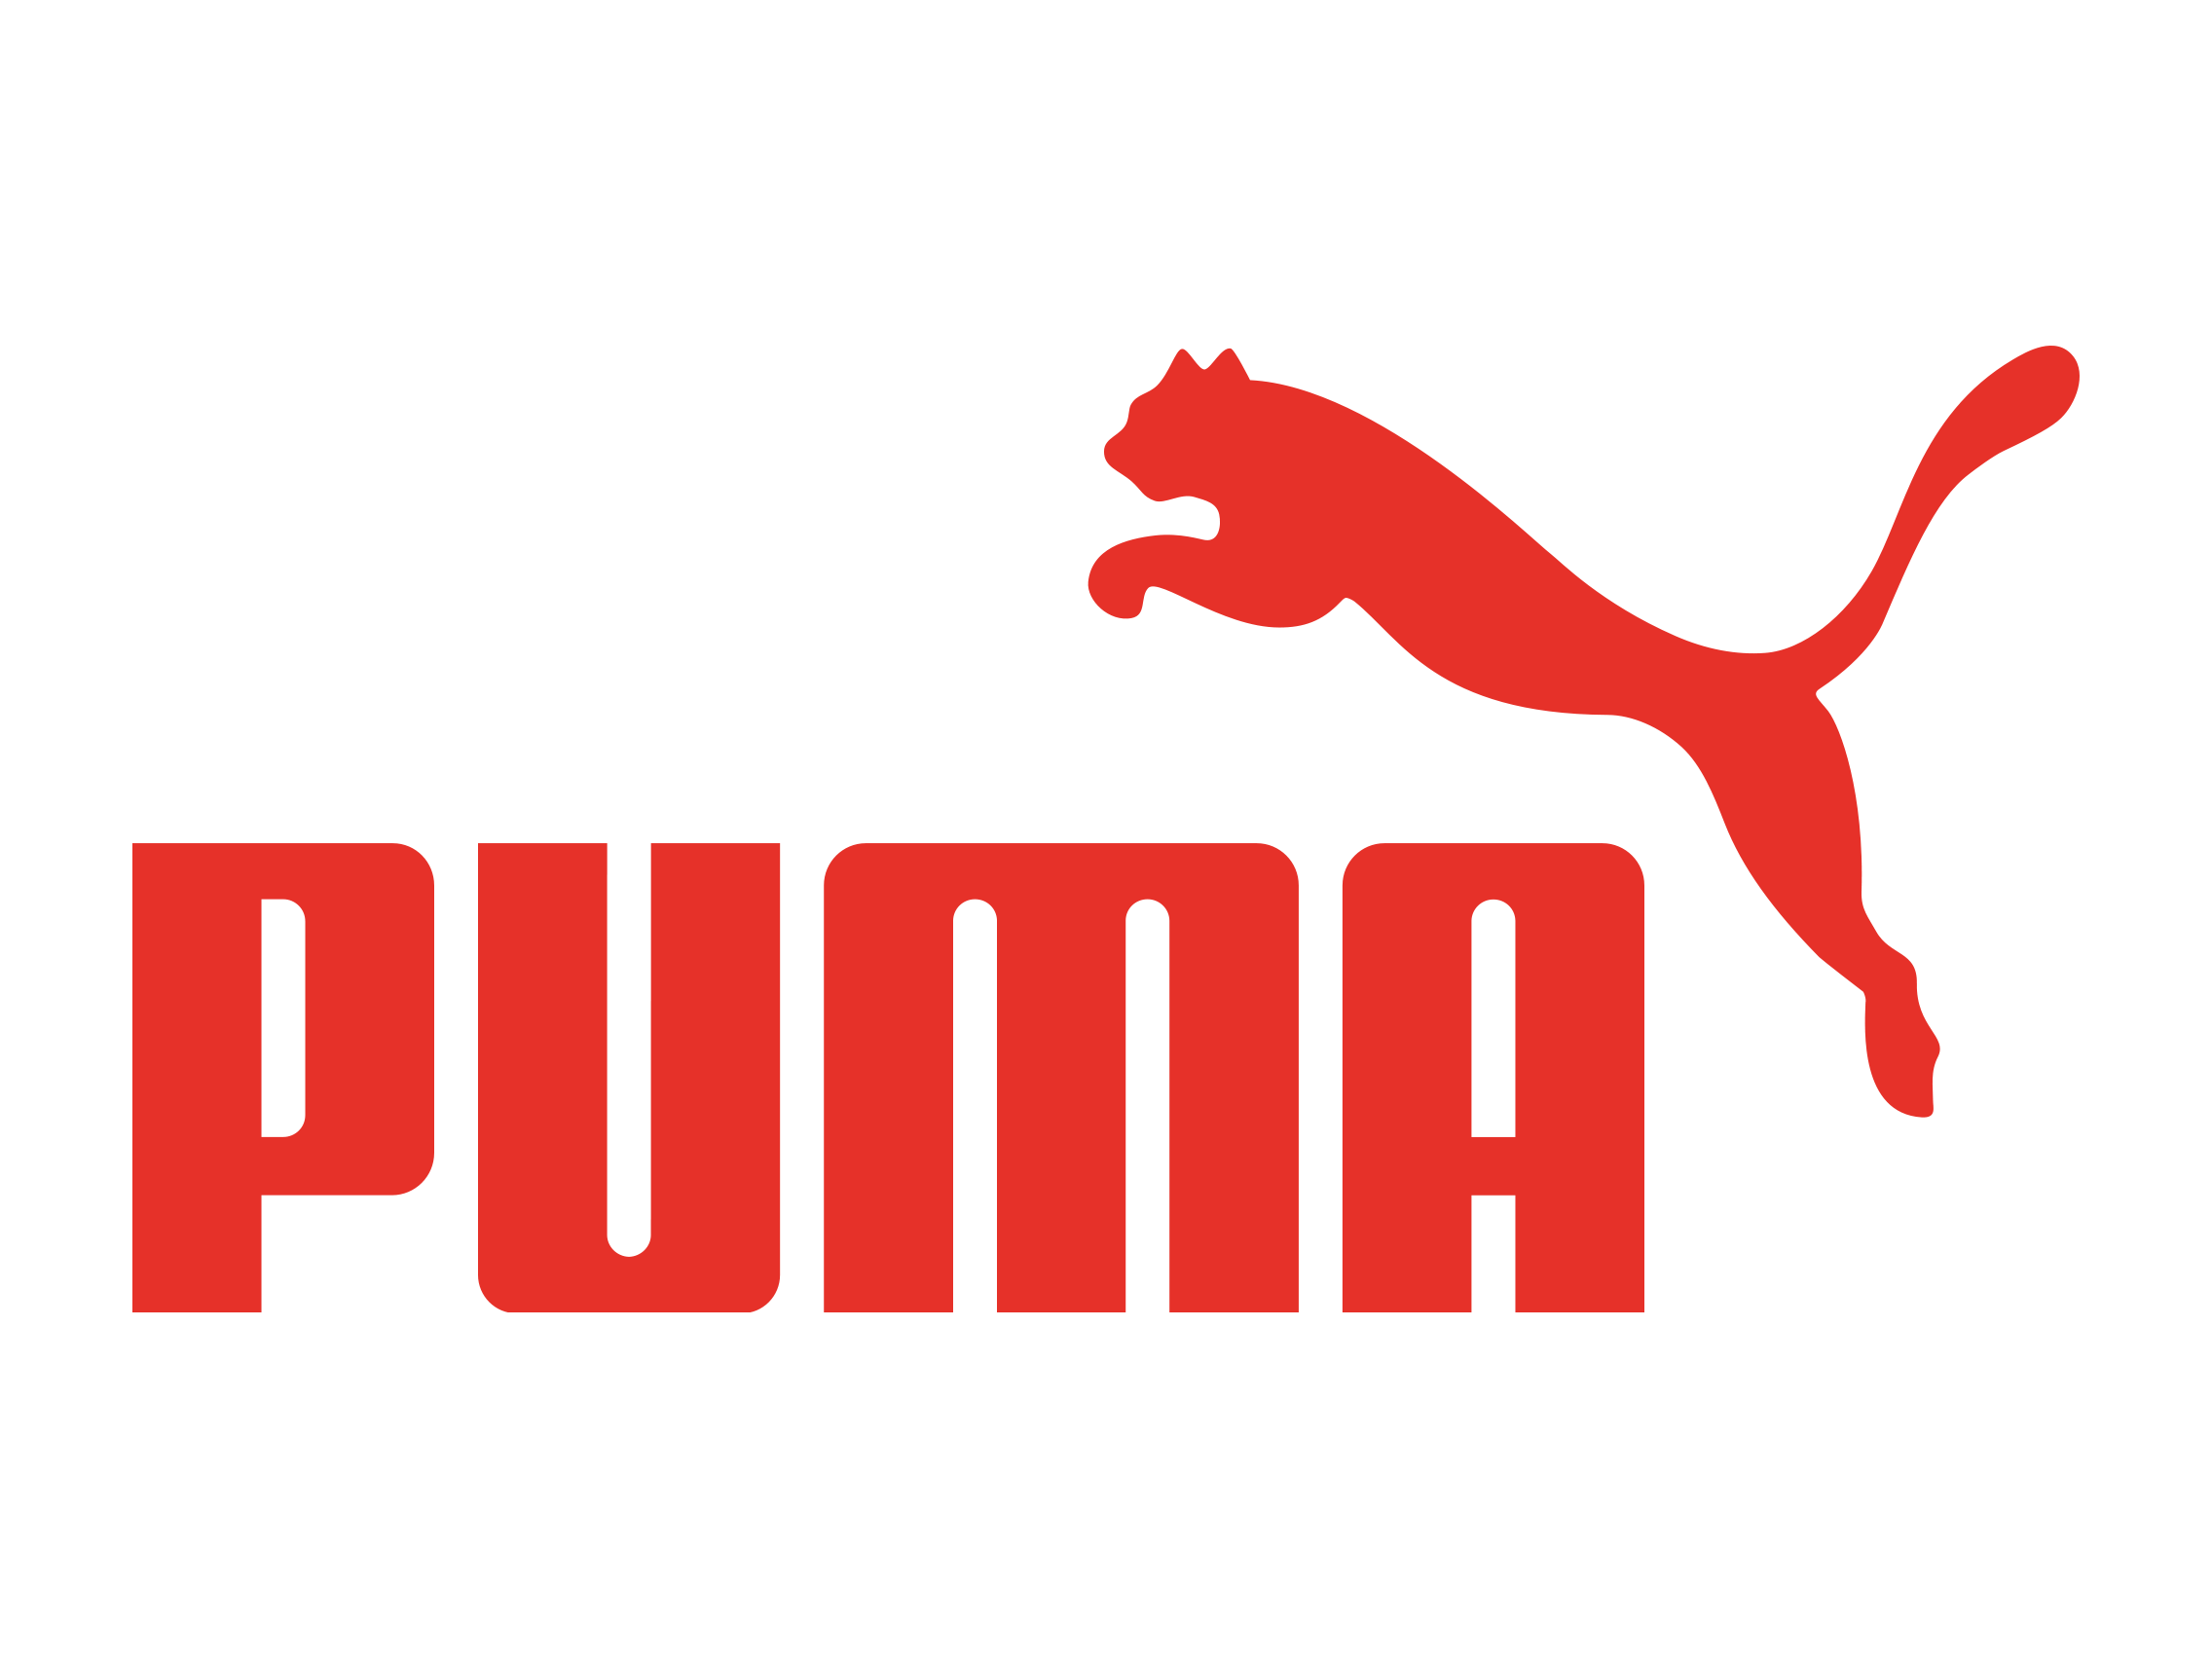 Red Cheetah Logo - Logo Design Round-Up: 15 Wild Animal Logos